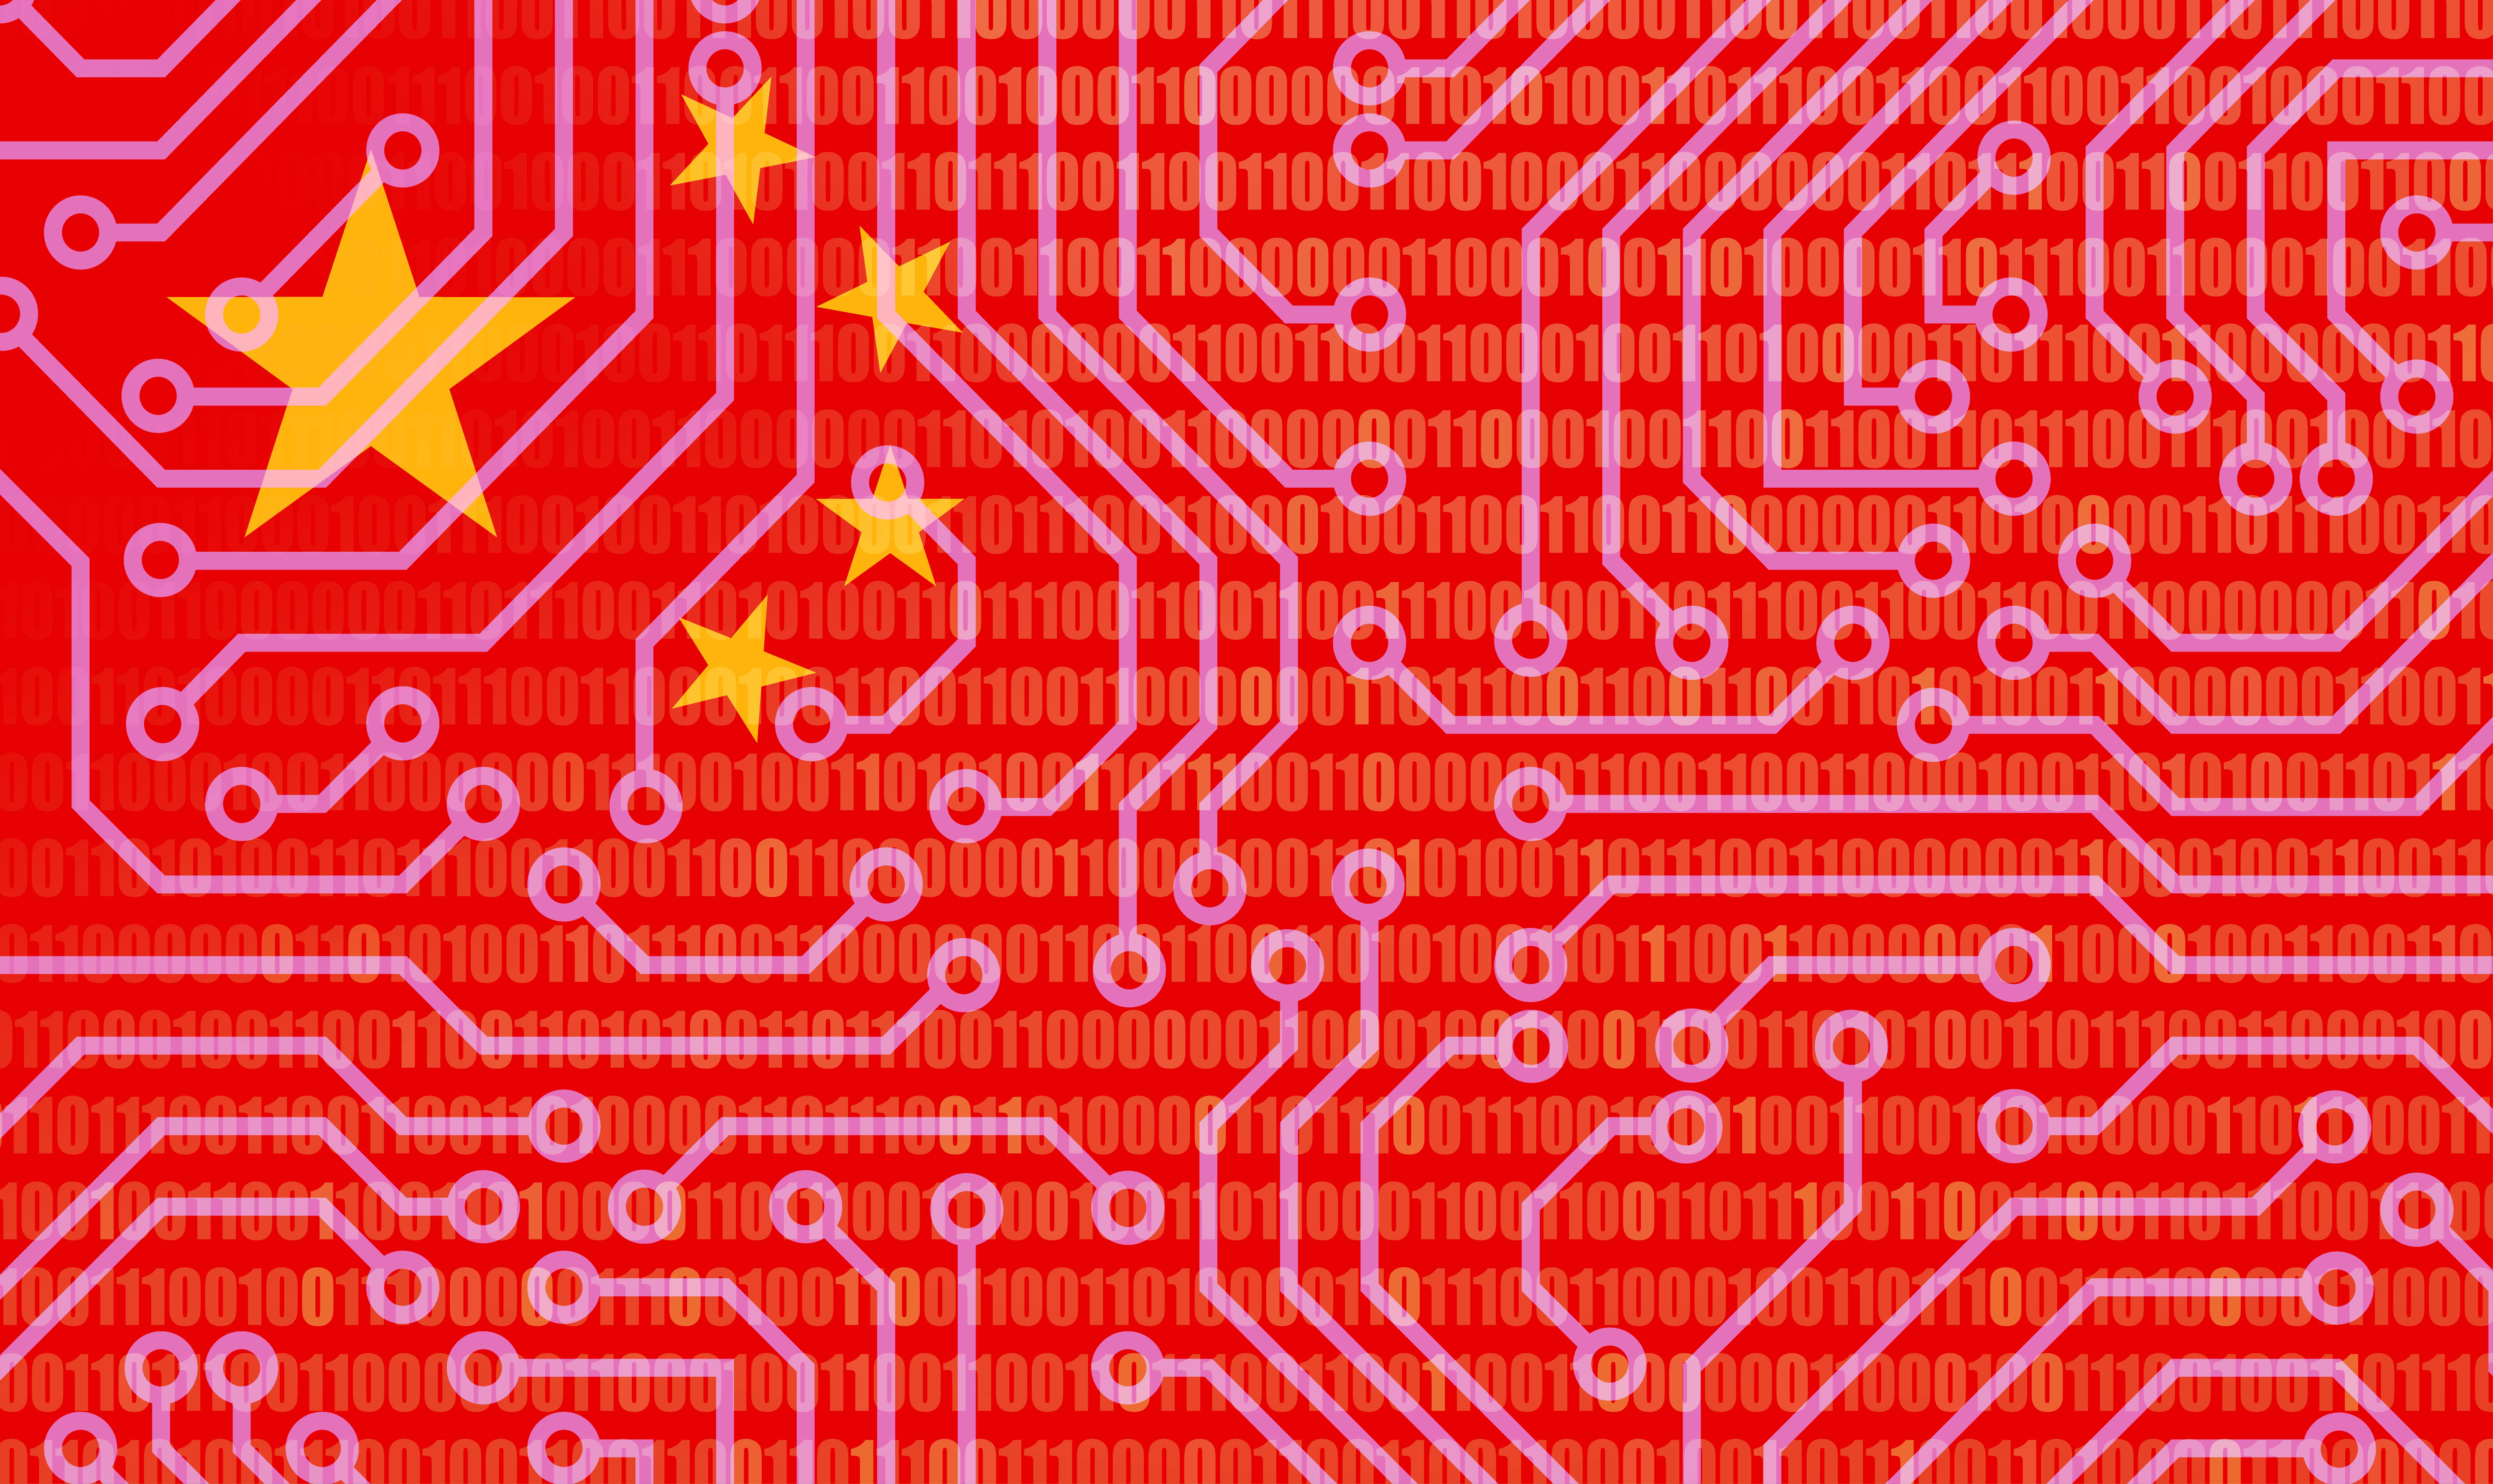 Kina kommer att öka datorkraften med 50 procent på grund av AI-kapplöpning med USA